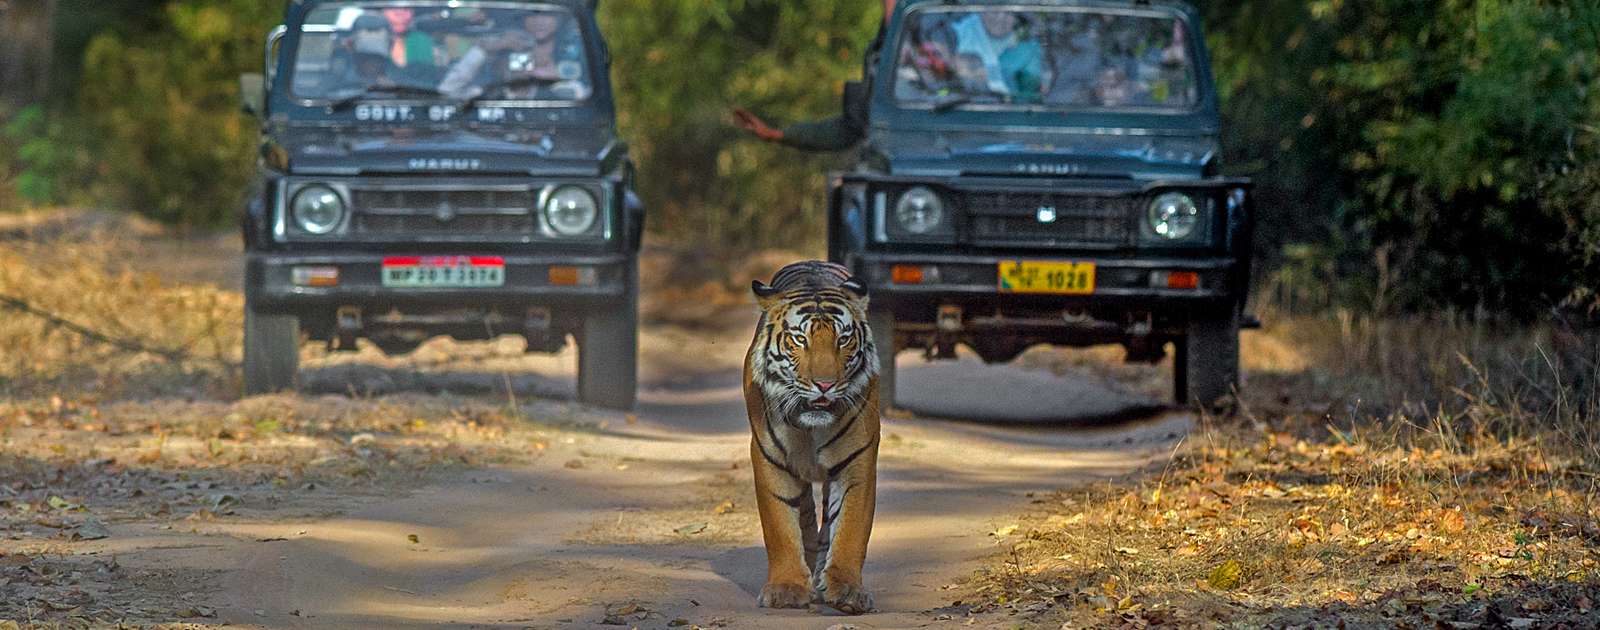 Exclusive Wildlife tour of North India